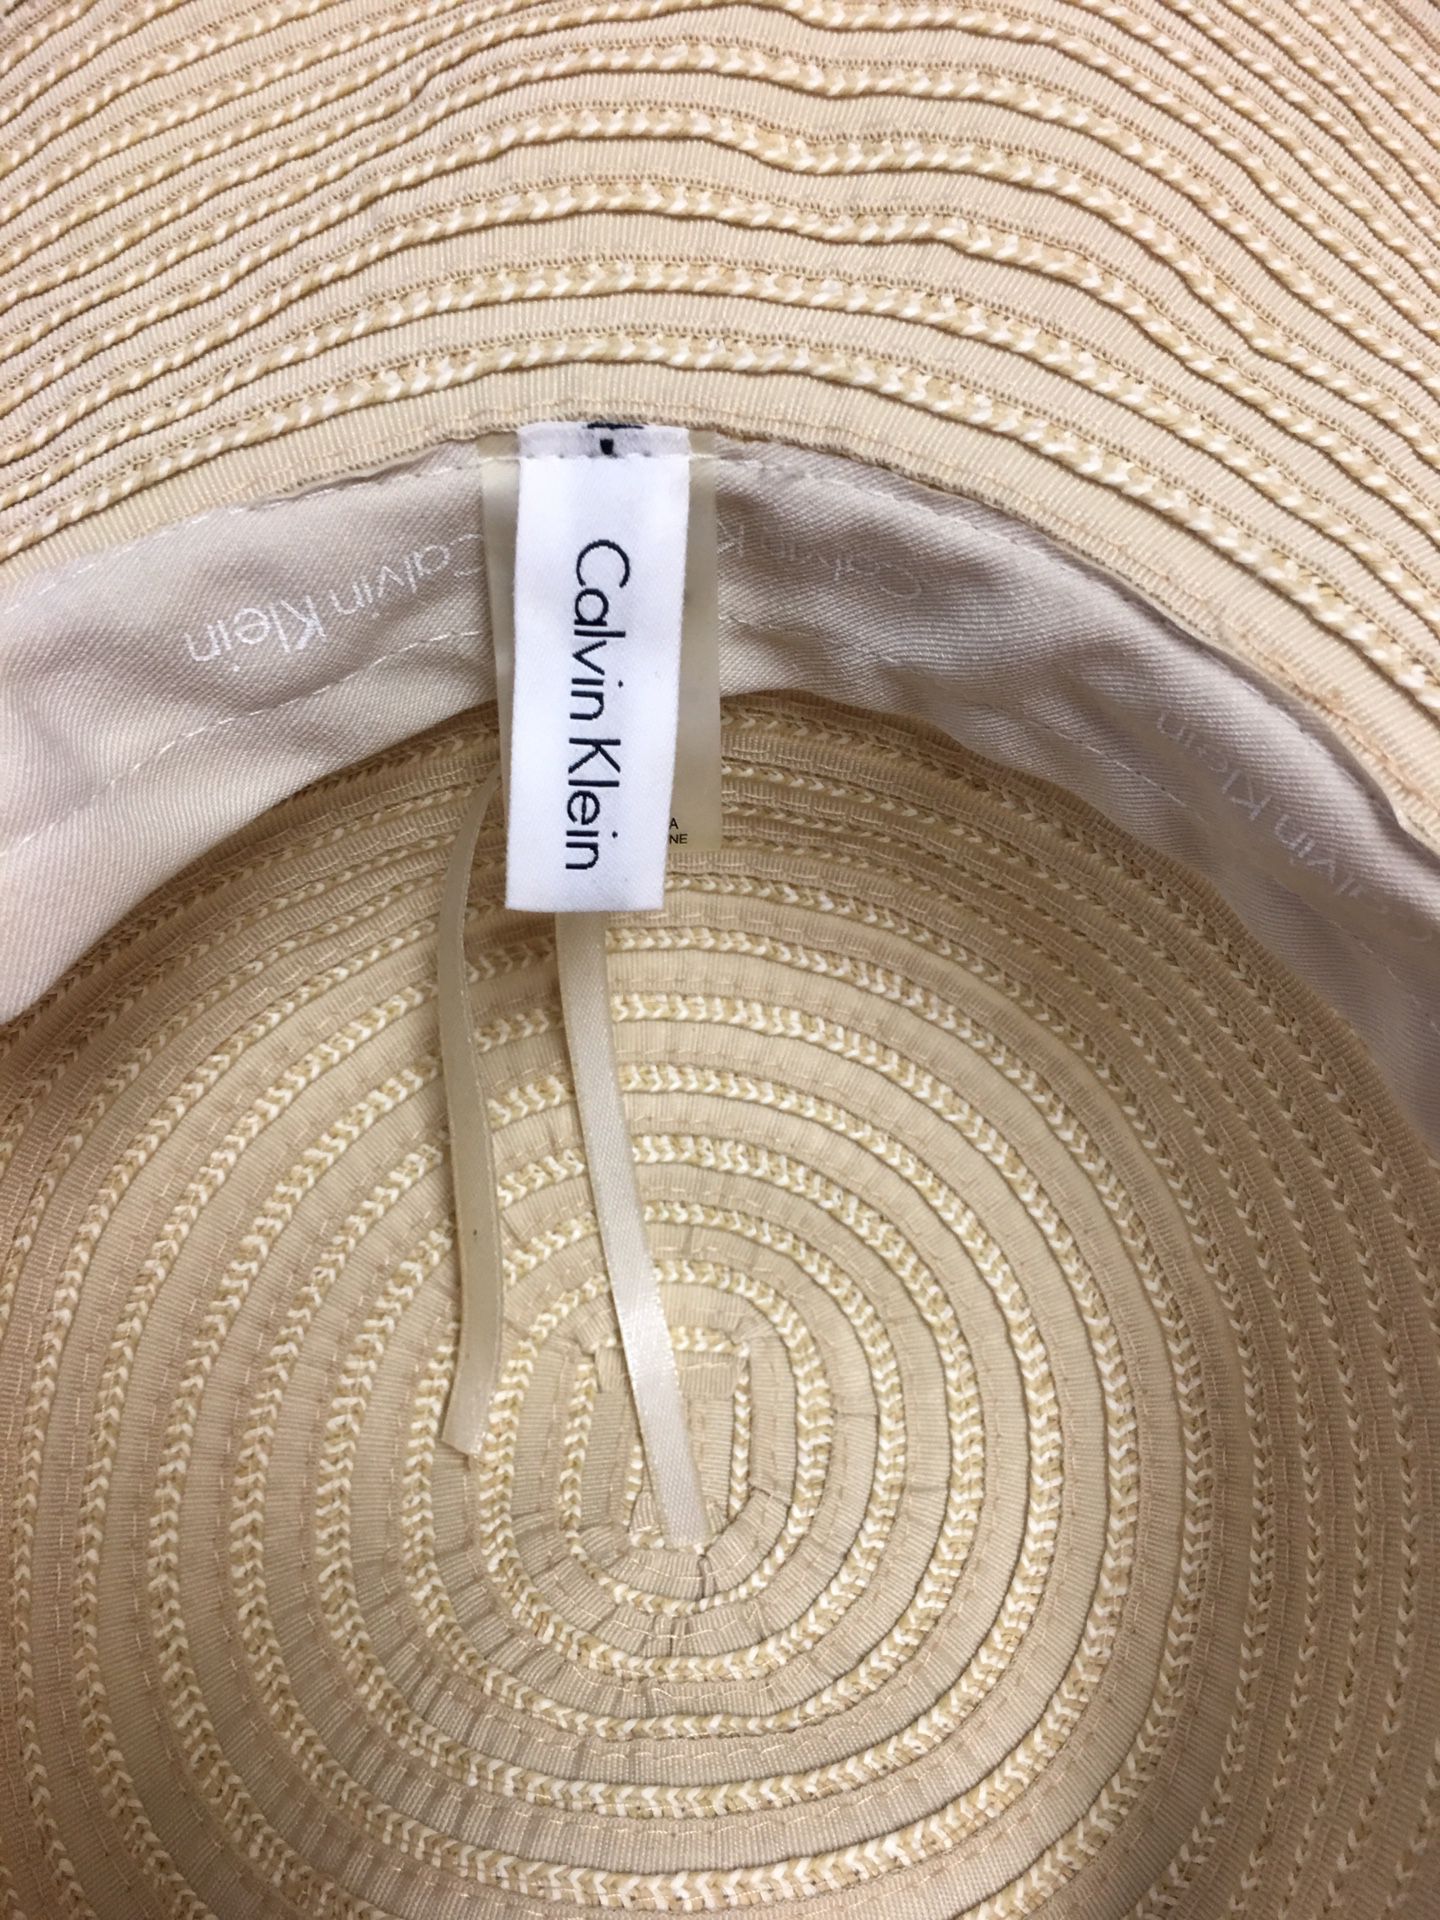 Calvin Klein wide brimmed hat for Sale in Kingsburg, CA - OfferUp